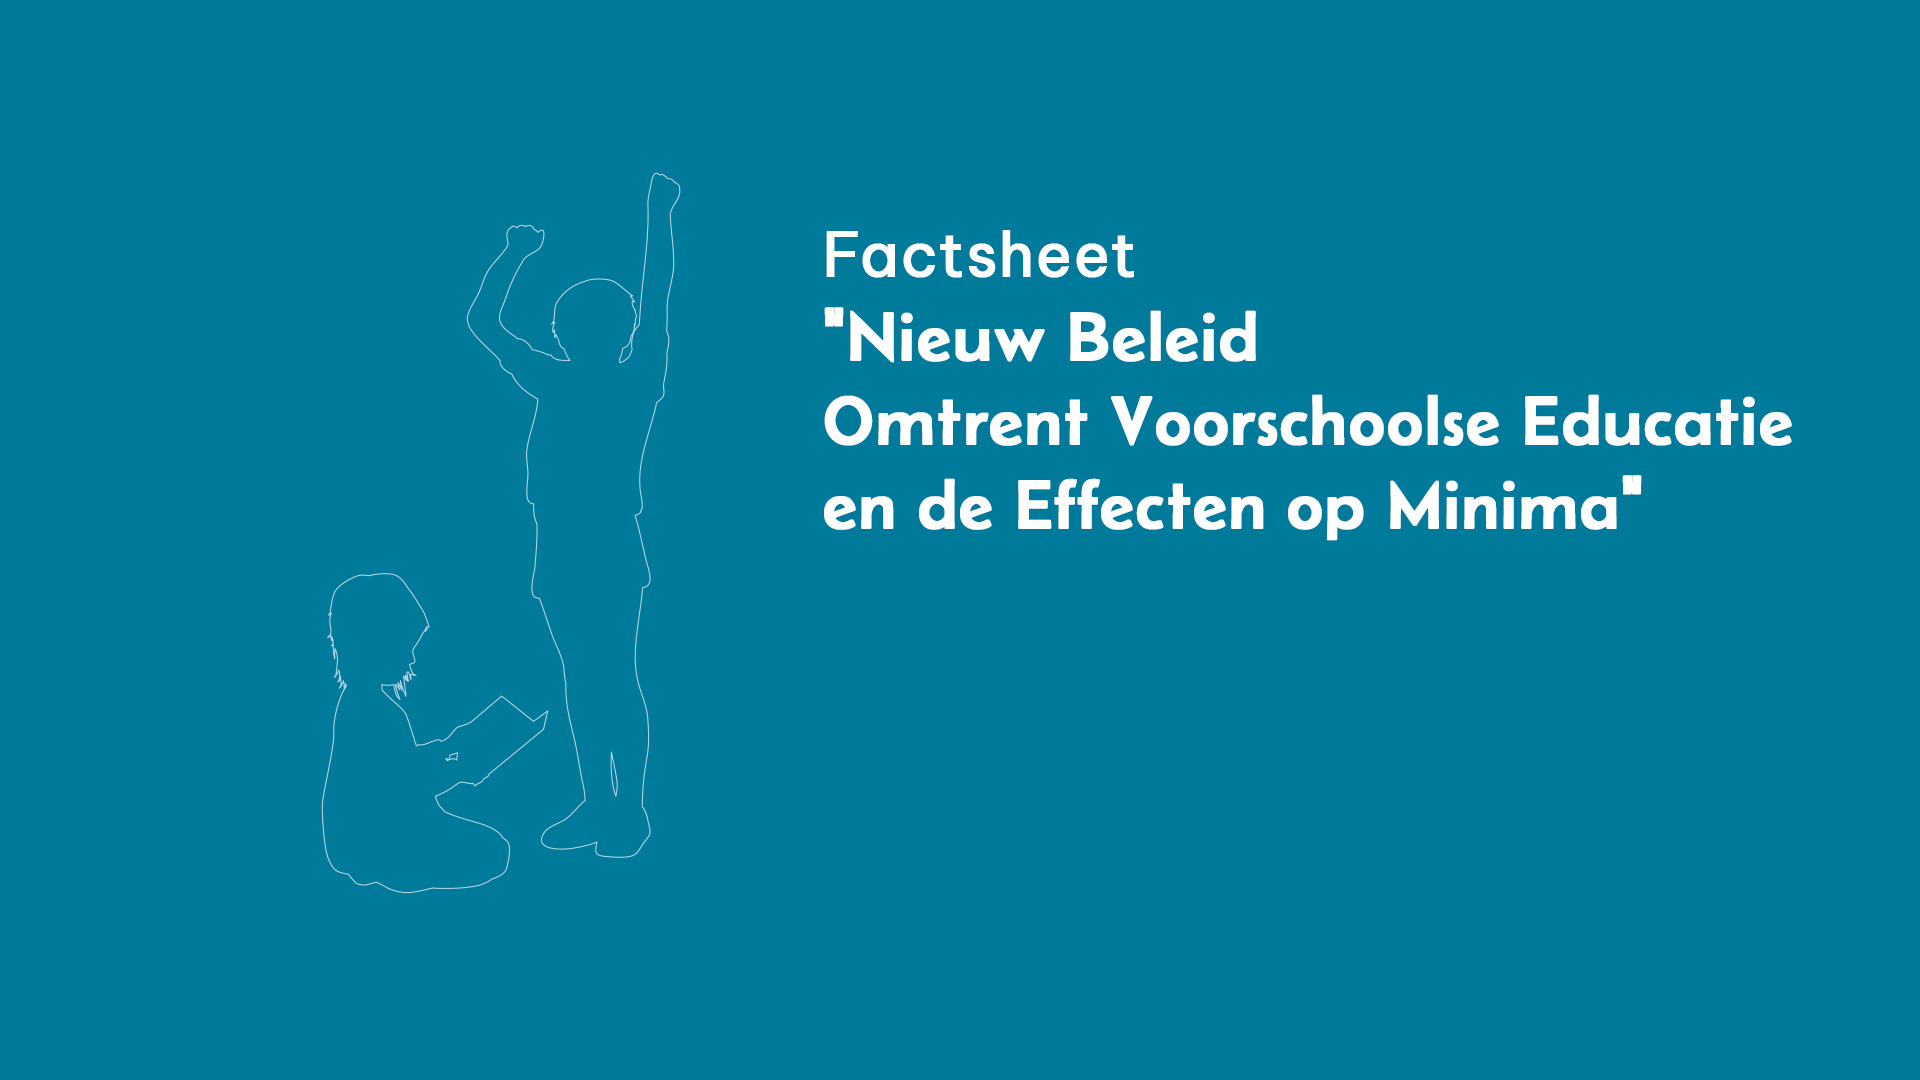 factsheet “Nieuw Beleid Omtrent Voorschoolse Educatie en de Effecten op Minima”